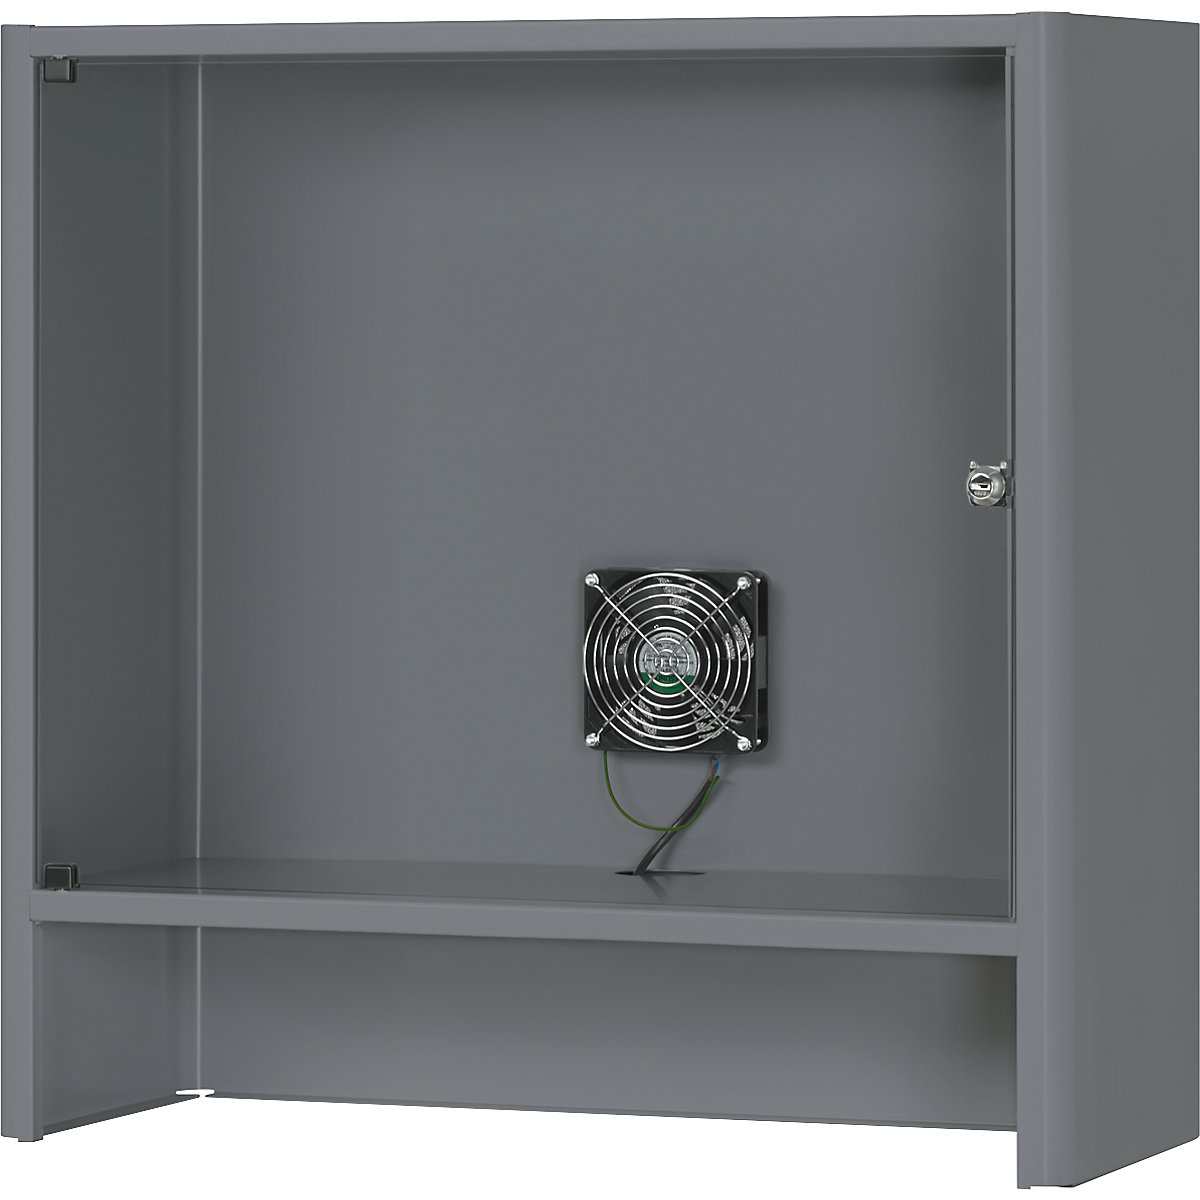 Compartimento para monitor con ventilación activa integrada – RAU